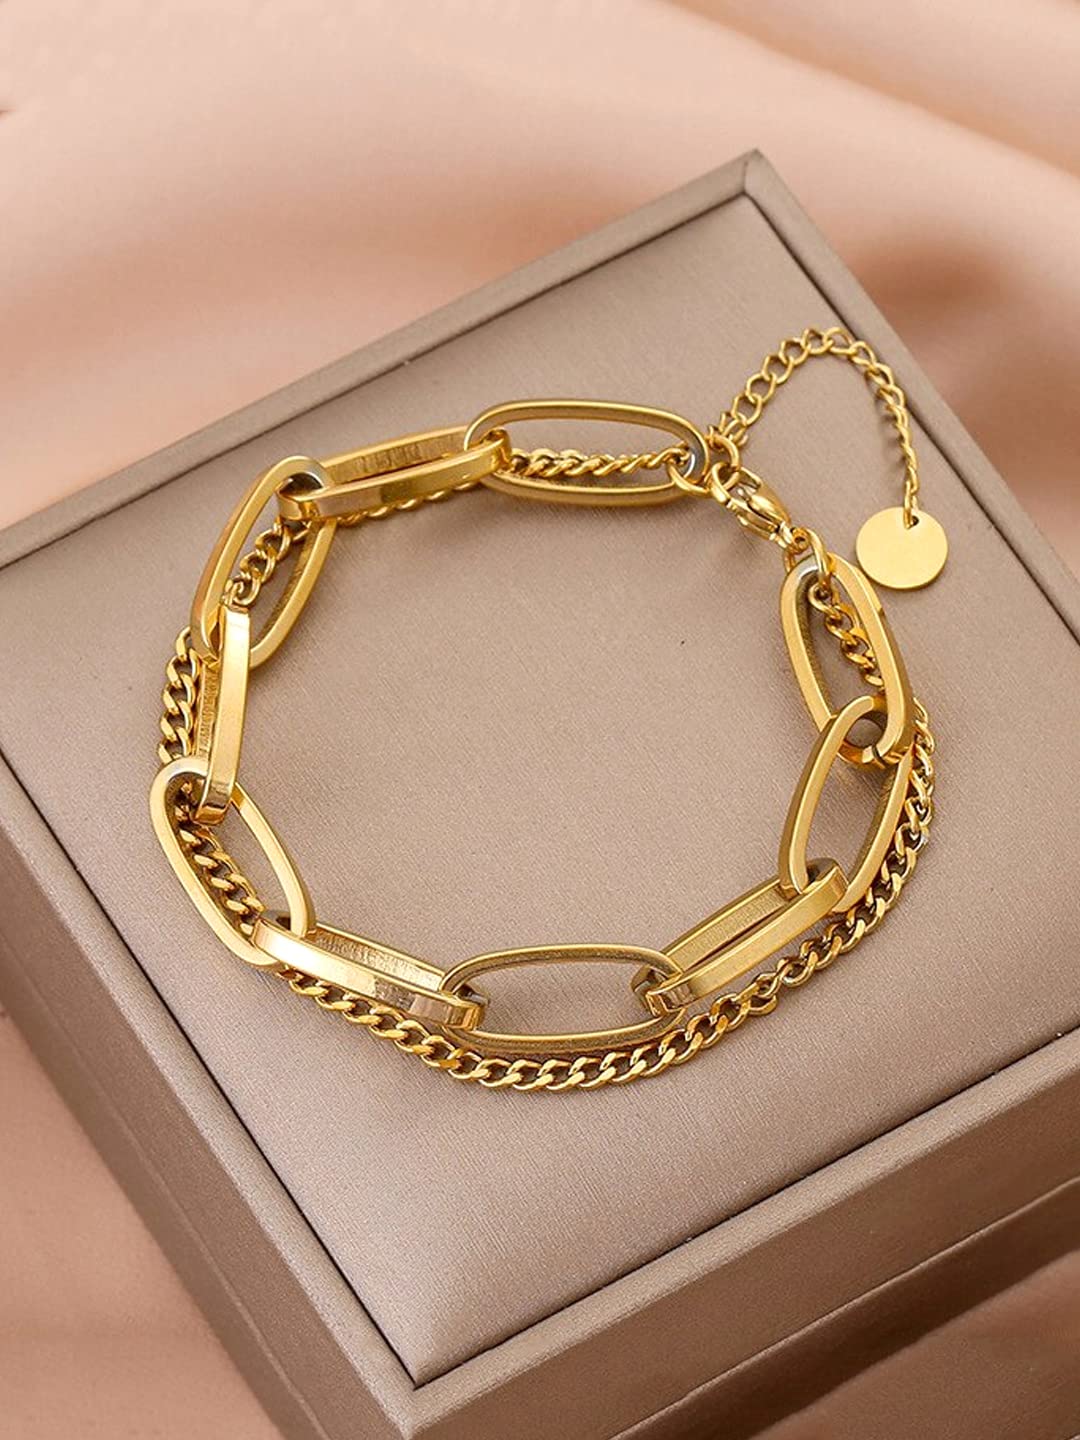 14K Solid Yellow Gold Mens Cuban Link Bracelet 7 mm – Avianne Jewelers